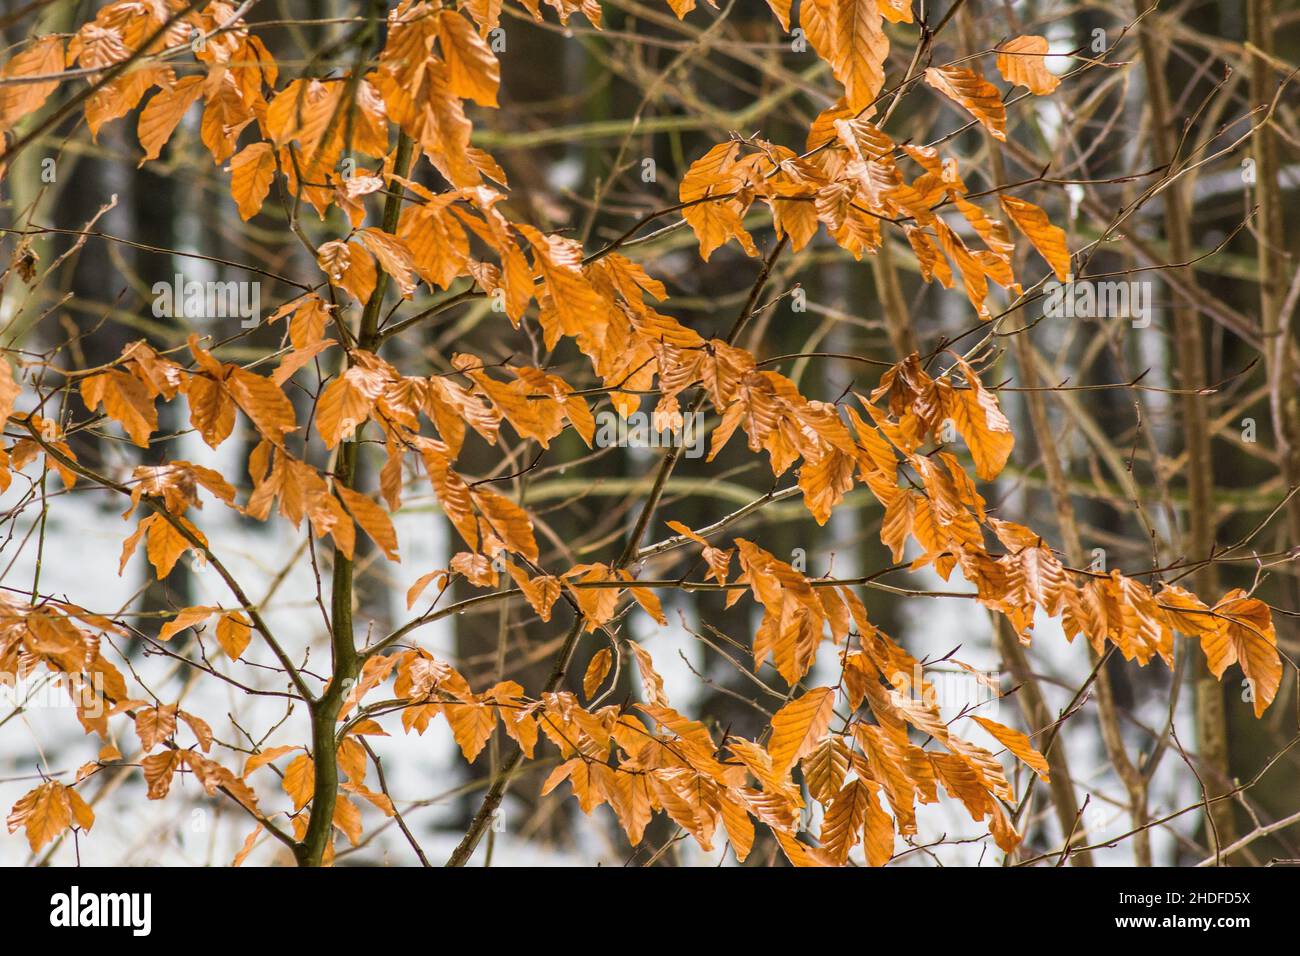 Podzimní oranžové listy keře na začátku zimy. Stock Photo